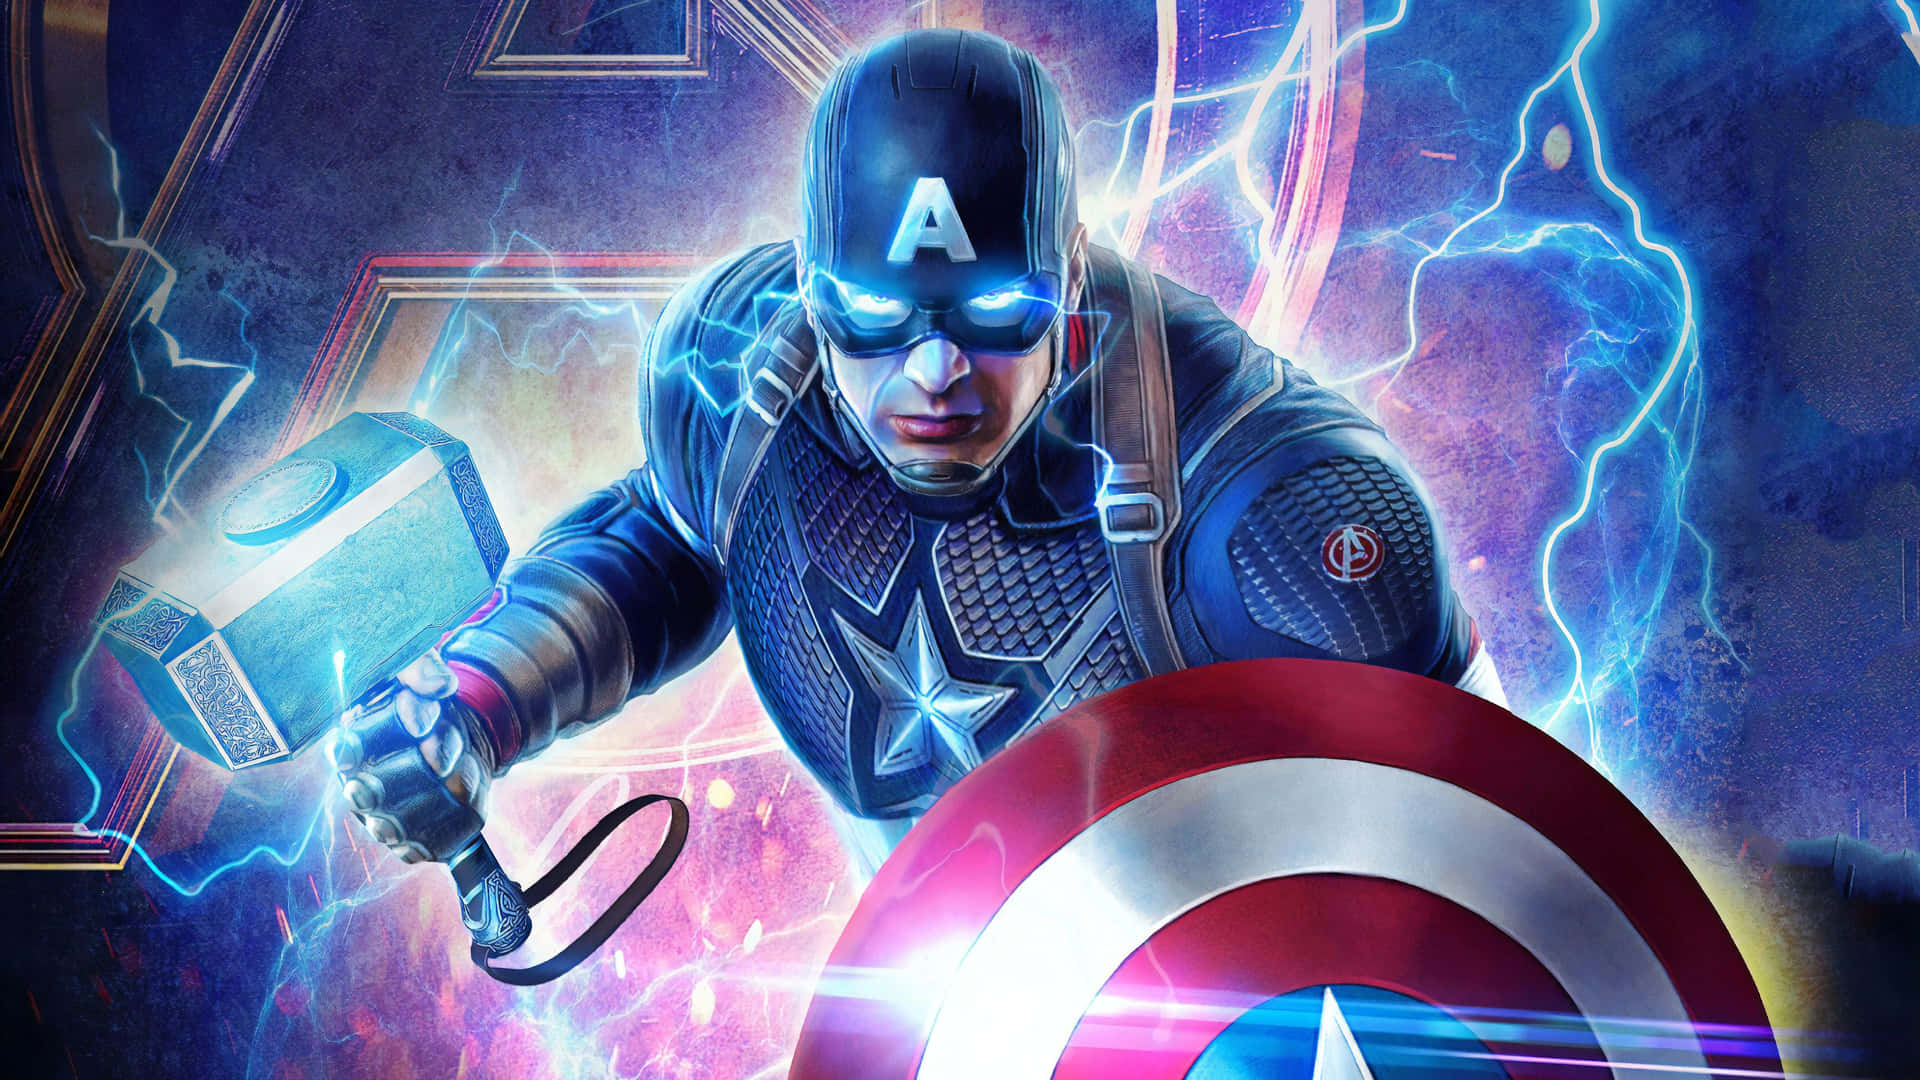 Potentesfondo Digitale Dell'artista Captain America Avenger Endgame.